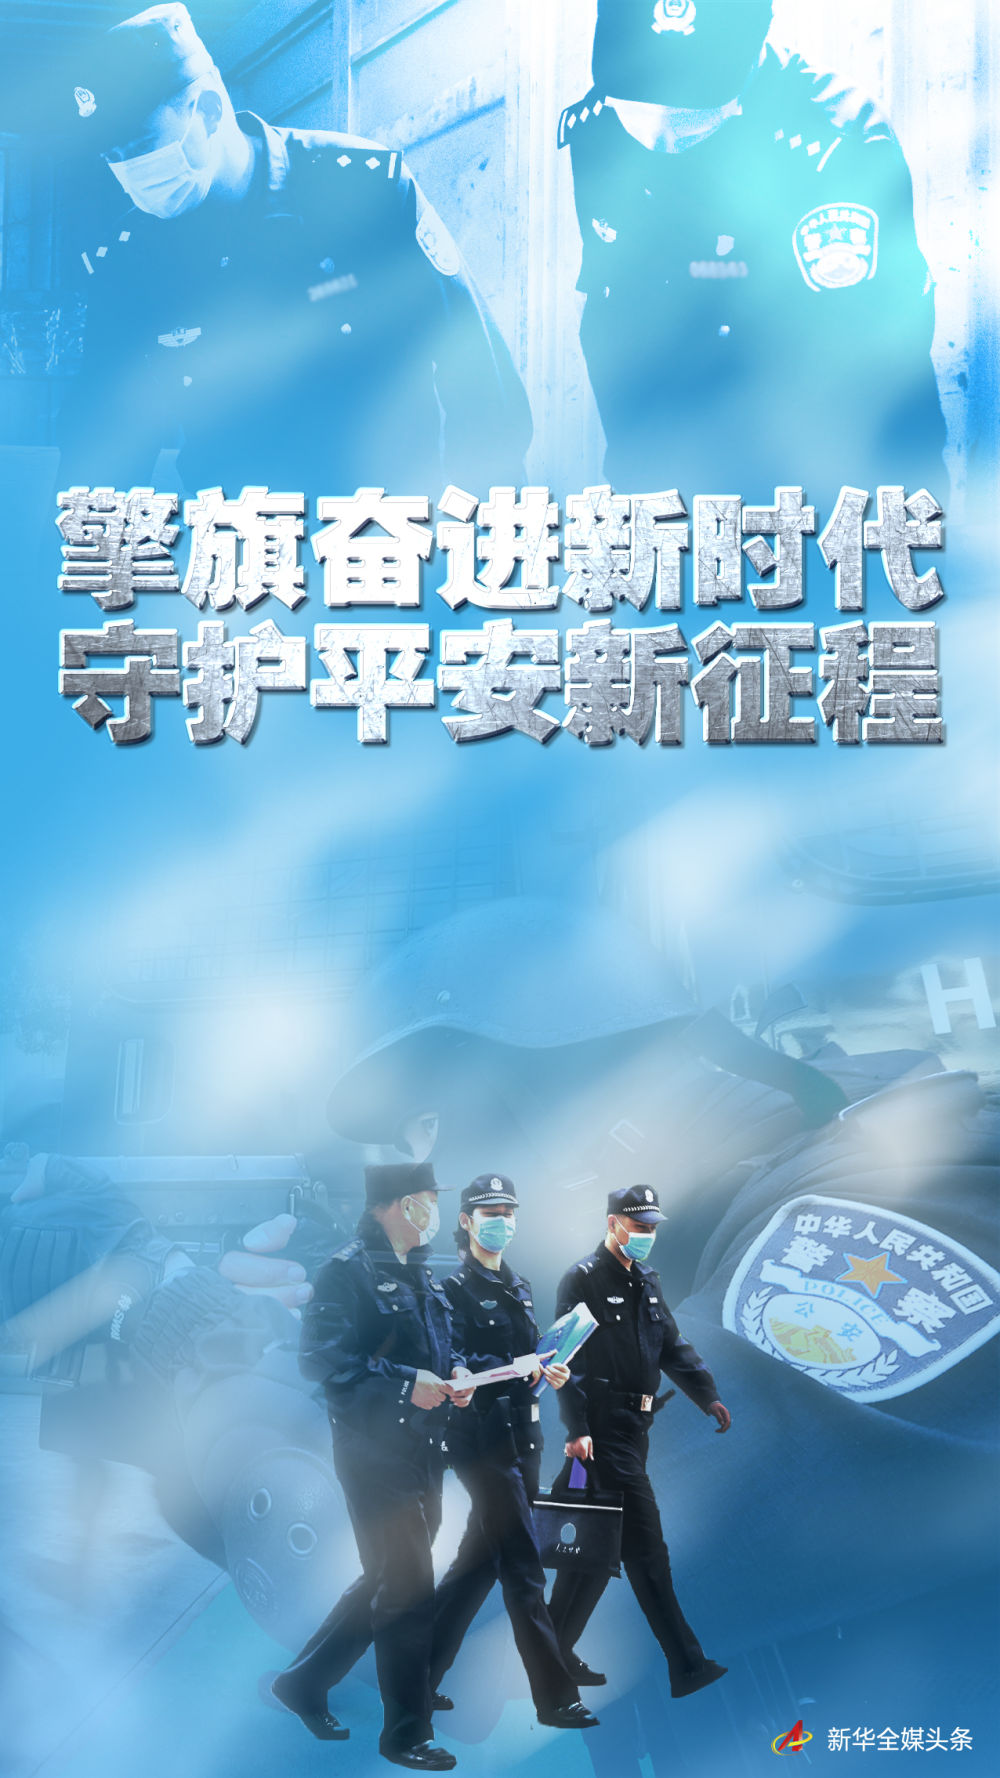 擎旗奋进新时代 守护平安新征程——写在第三个中国人民警察节到来之际